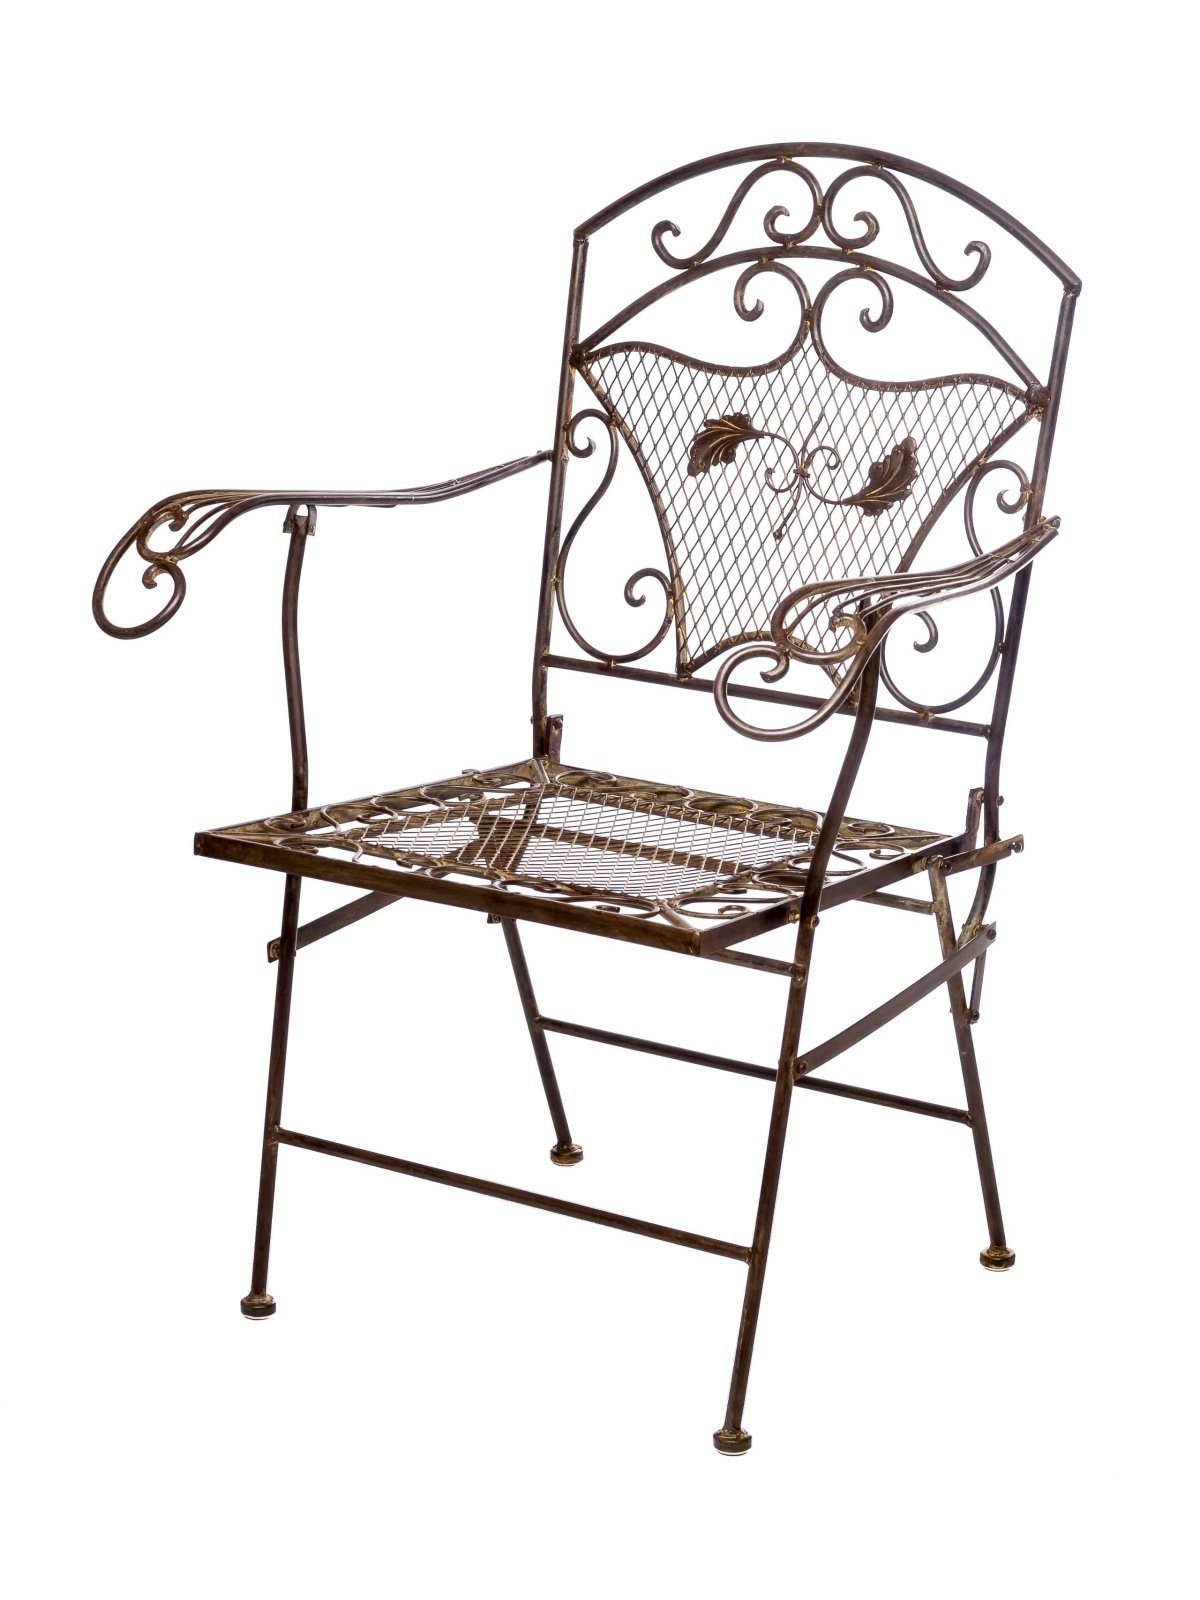 Aubaho Gartenstuhl Nostalgie Gartensessel Eisen 15kg Gartenstuhl Sessel Stuhl antik Stil